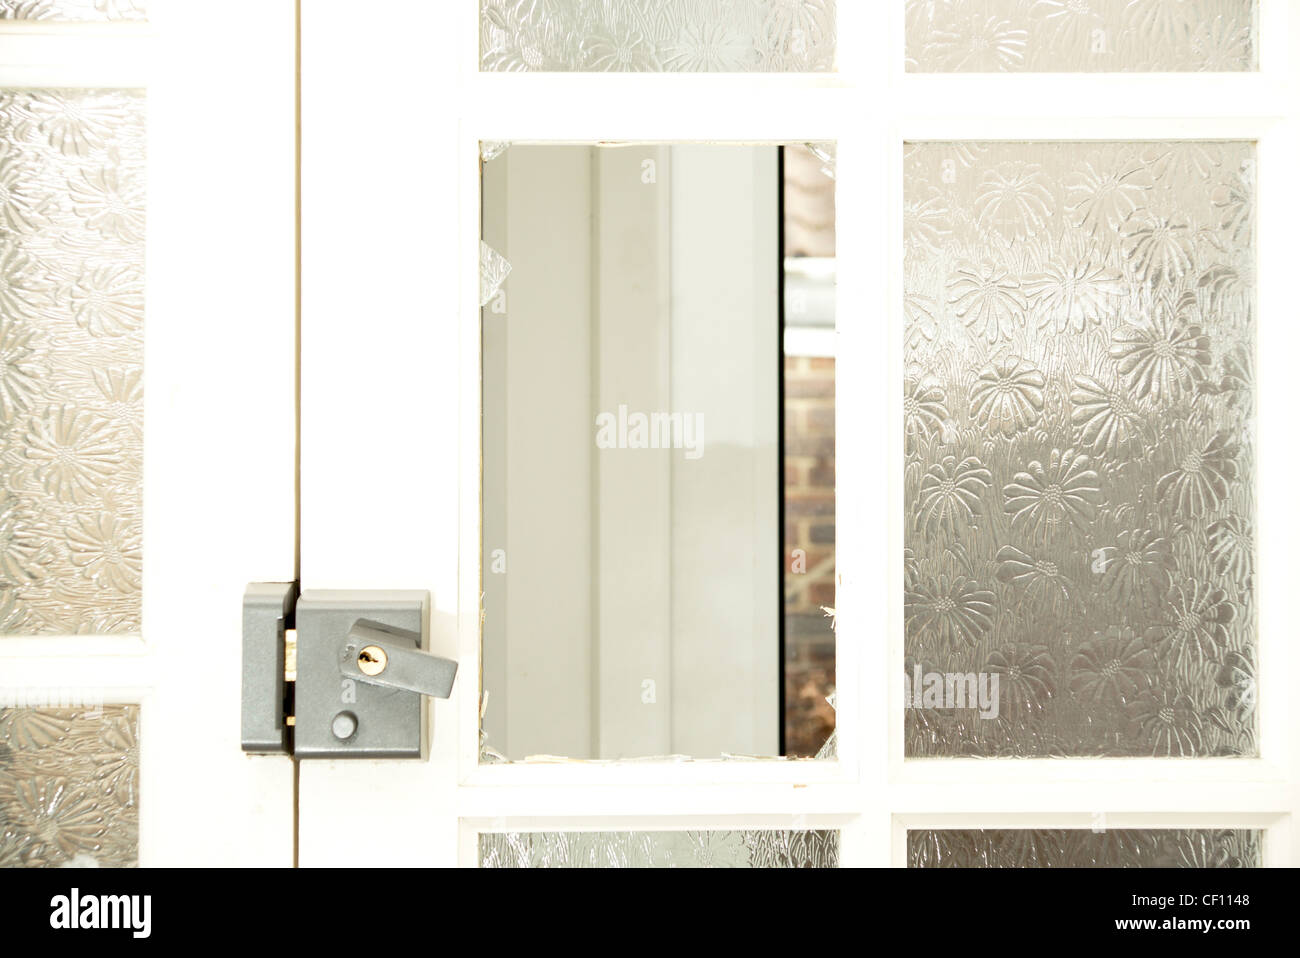 Fensterscheibe in einer Haustür mit zerschmetterten gebrochen & Glasscherben Stockfoto